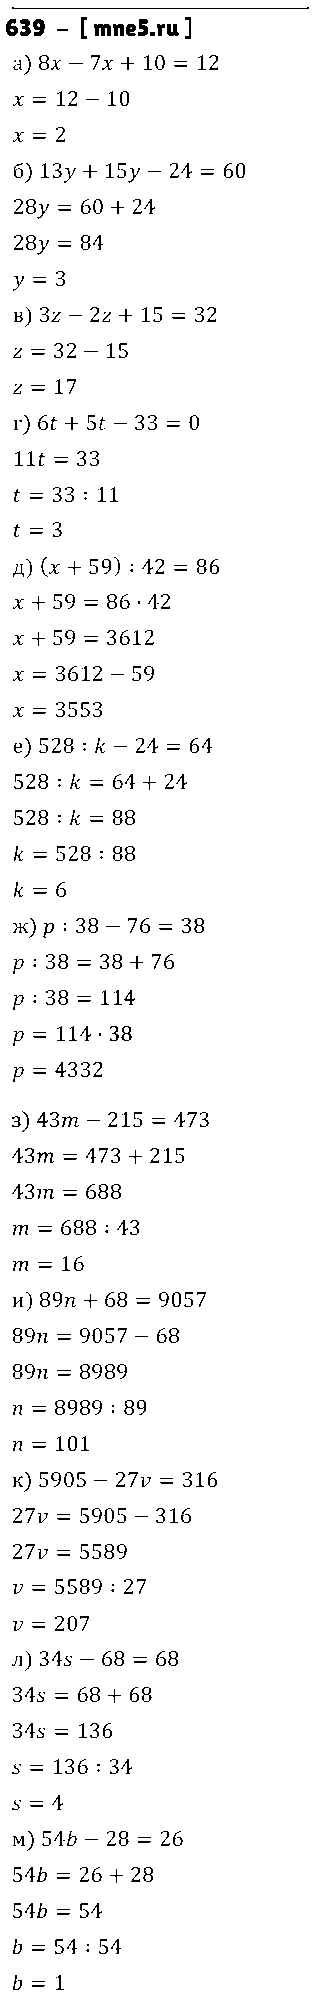 ГДЗ Математика 5 класс - 639